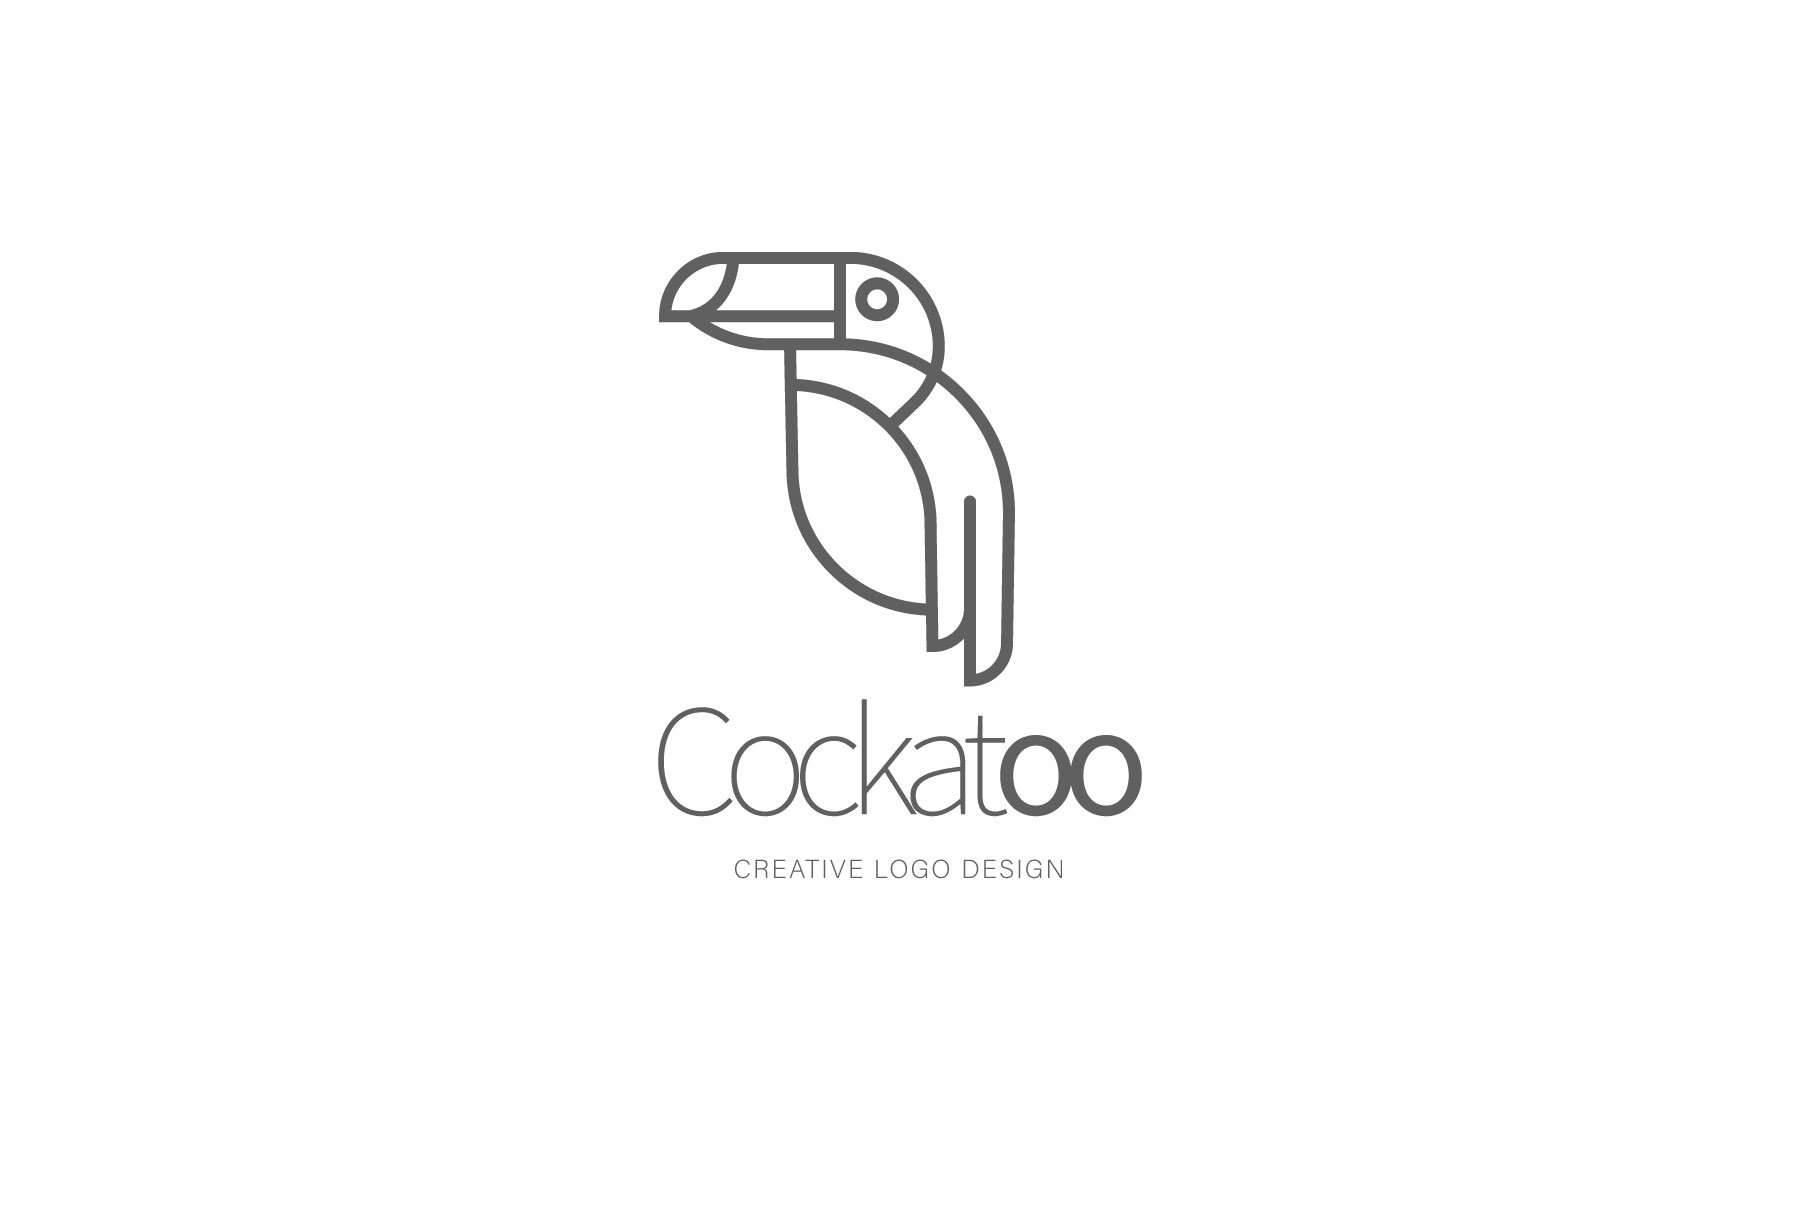 Cockatoo logo preview image.